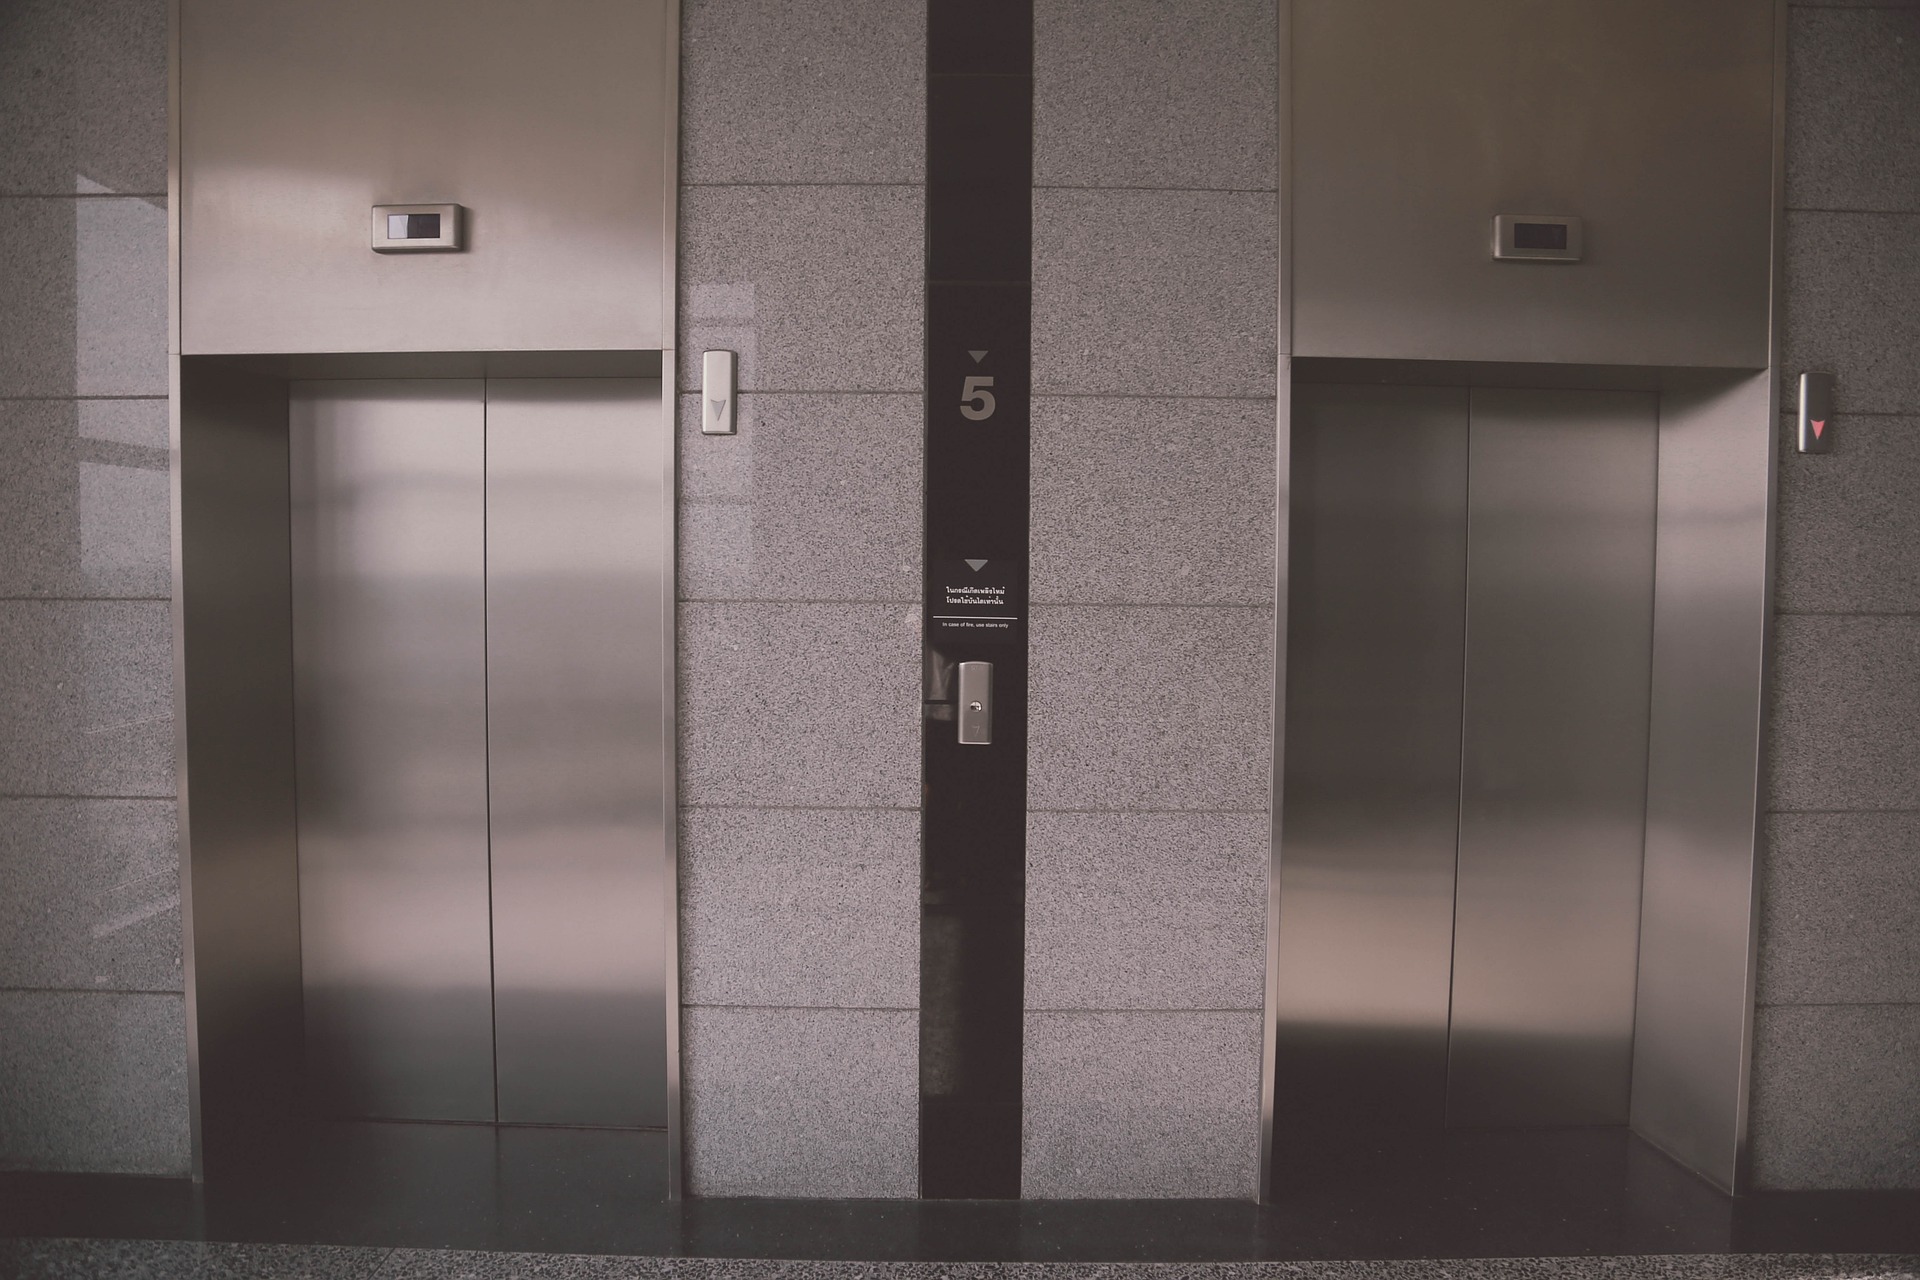 Intervento sugli ascensori all’ospedale del Valdarno